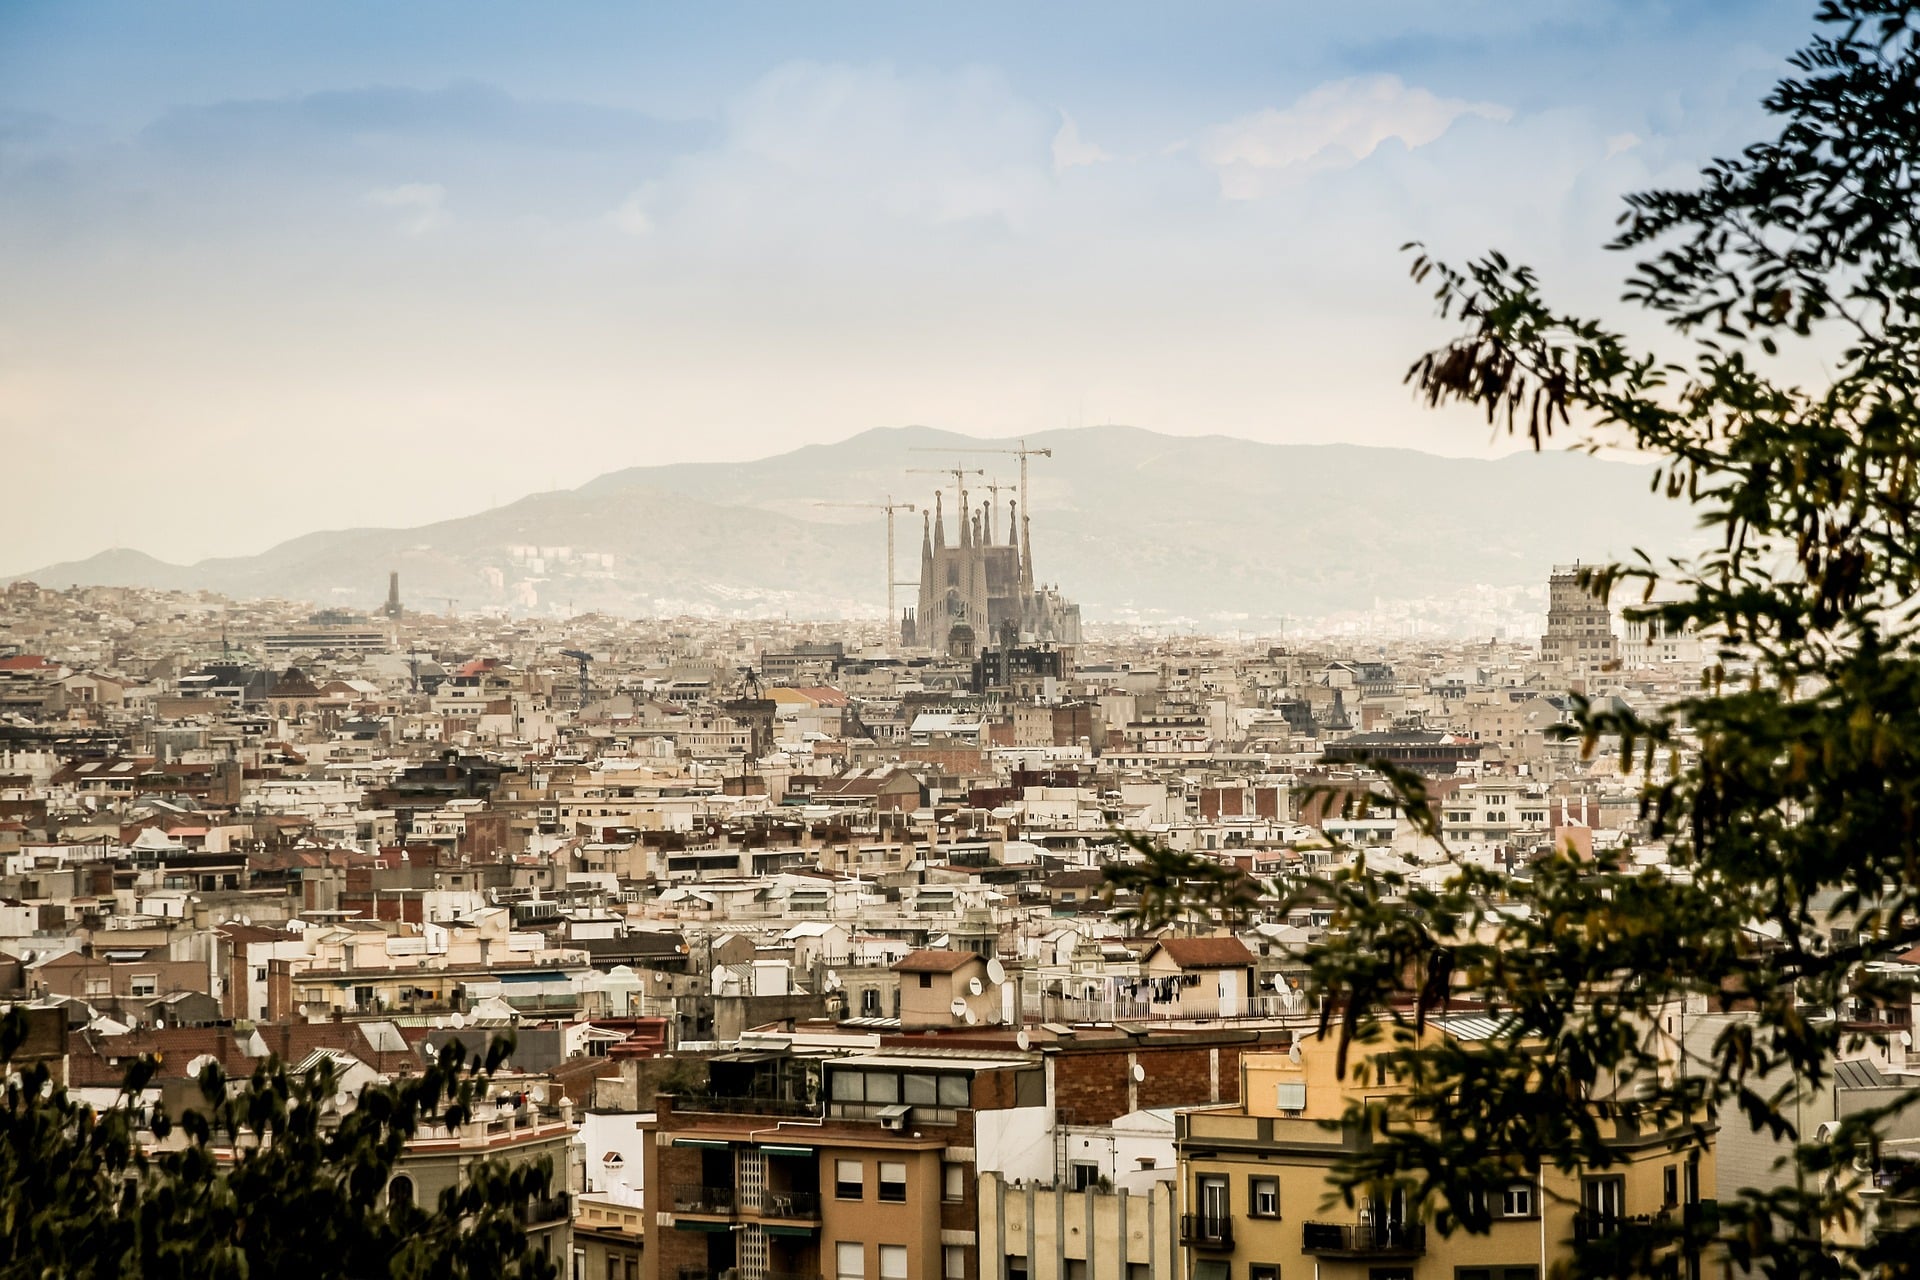 Die Sagrada Familia dominiert schon jetzt die Skyline von Barcelona. Bild: Pixabay